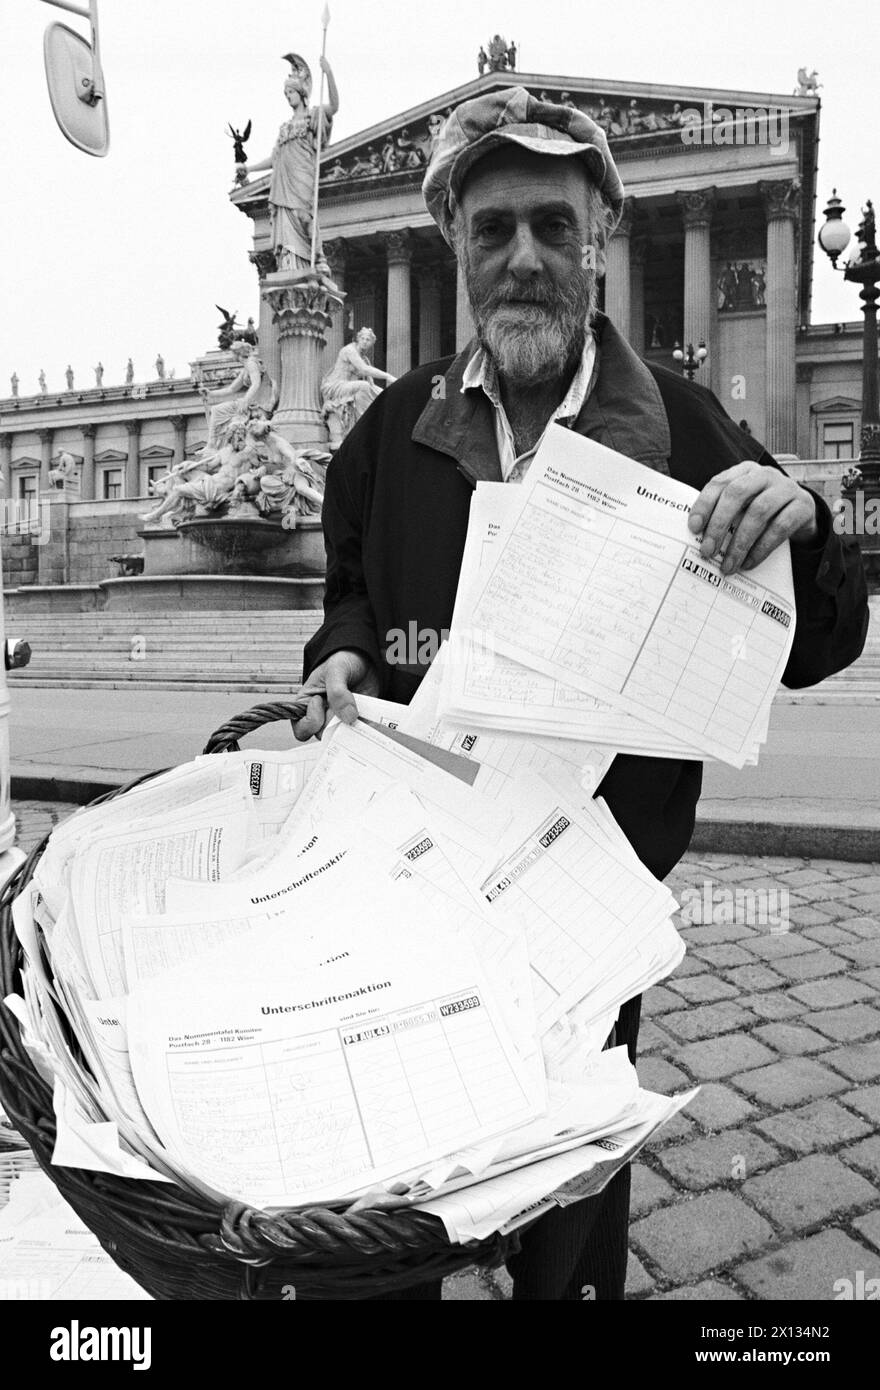 Vienna il 27 settembre 1989: L'artista Friedensreich Hundertwasser ha consegnato 235,000 firme per le sue targhe ai presidenti delle frazioni parlamentari. Nella foto: Hundertwasser con le liste delle firme. - 19890927 PD0016 - Rechteinfo: Diritti gestiti (RM) Foto Stock